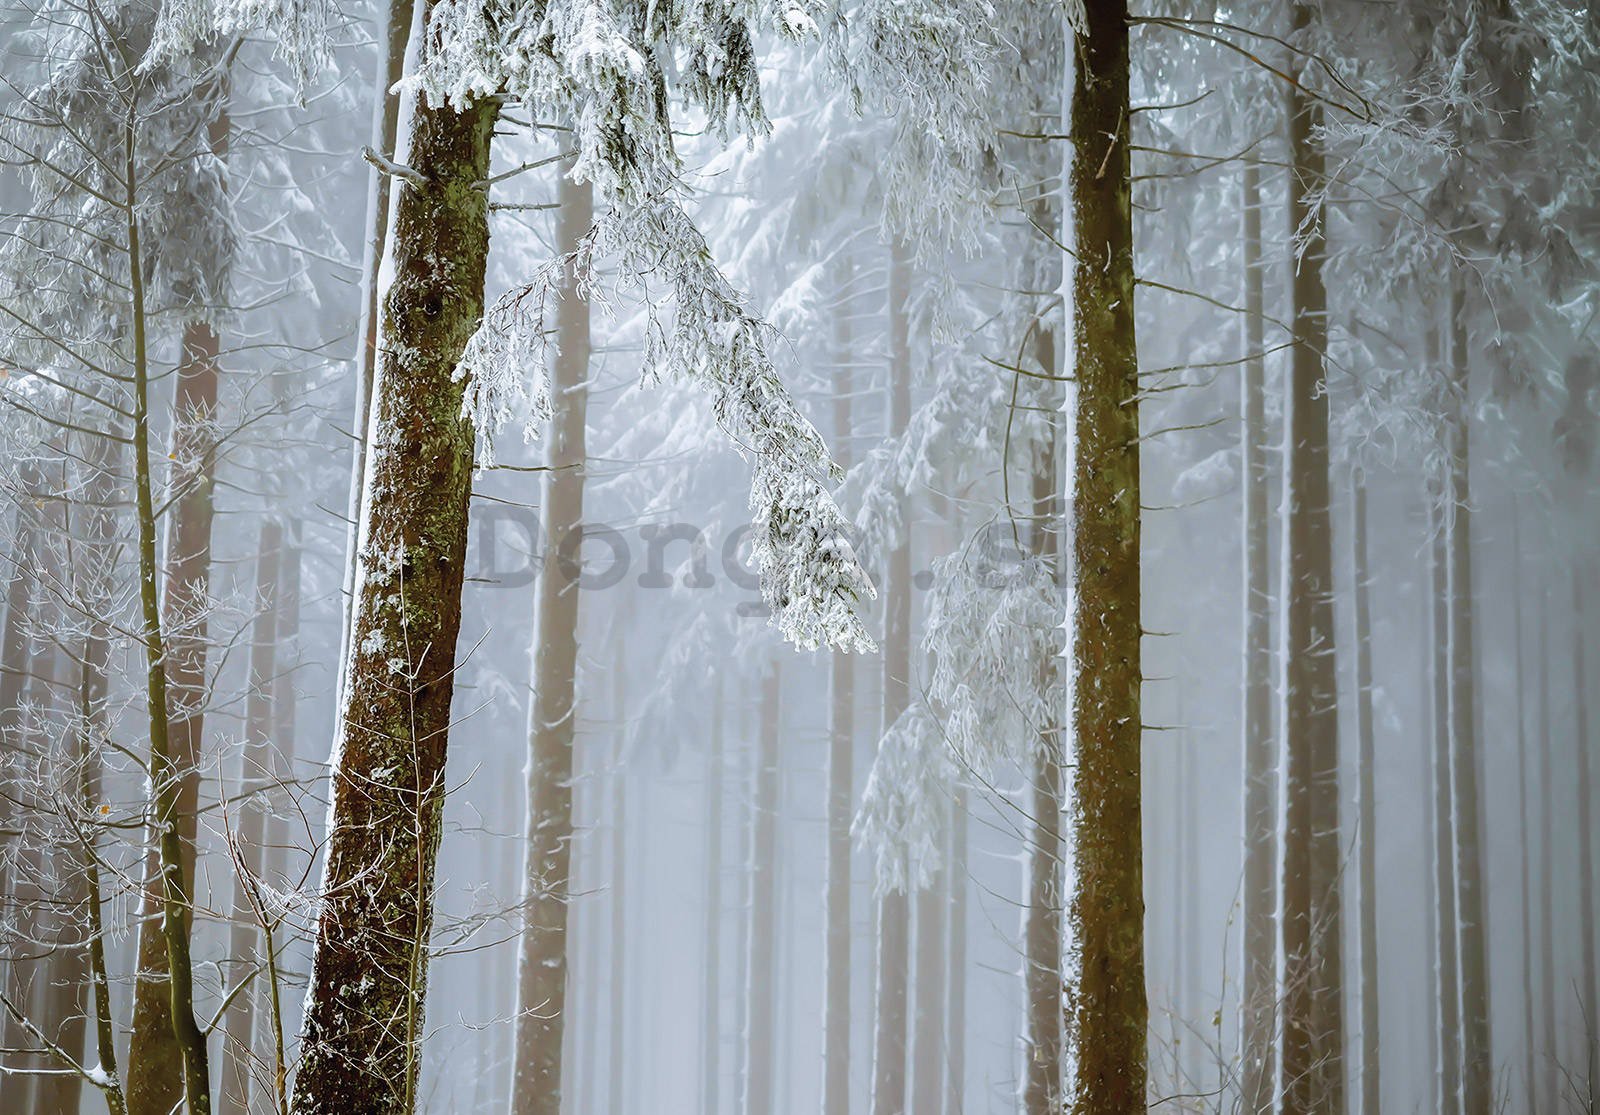 Fototapeta vliesová: Zasněžený jehličnatý les - 254x184 cm